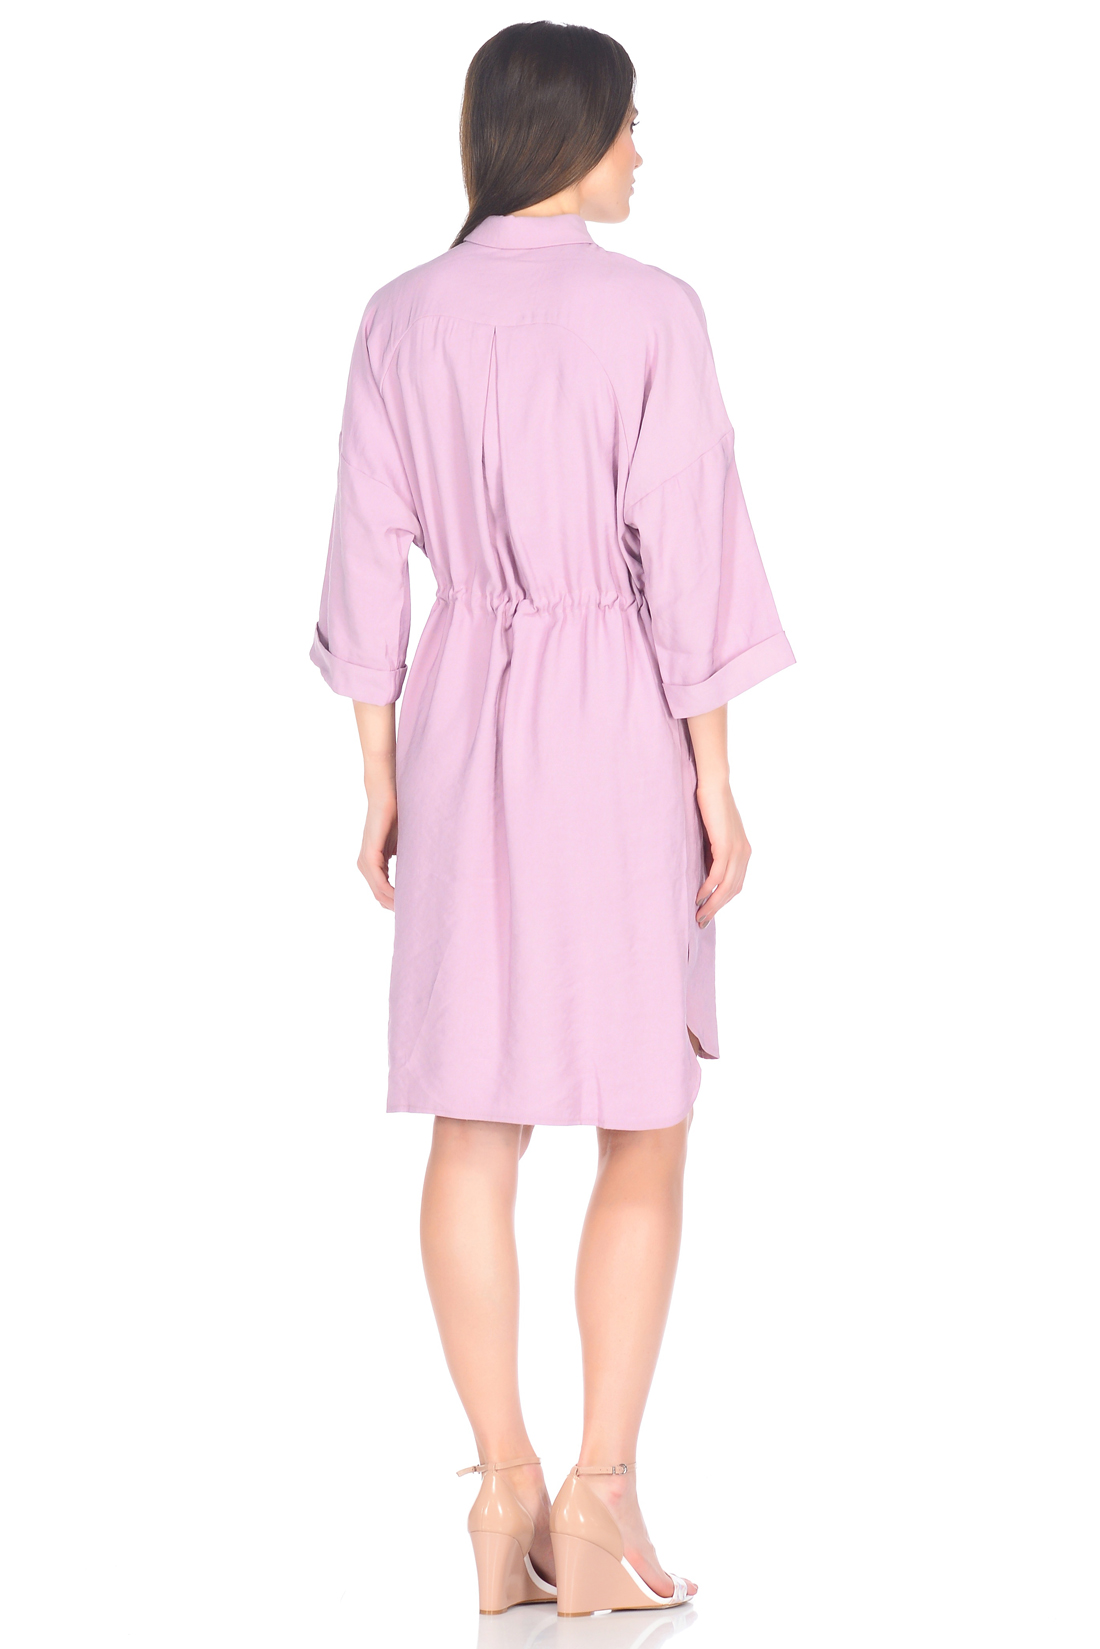 Платье-рубашка с потайной застёжкой (арт. baon B458019), размер M, цвет розовый Платье-рубашка с потайной застёжкой (арт. baon B458019) - фото 2